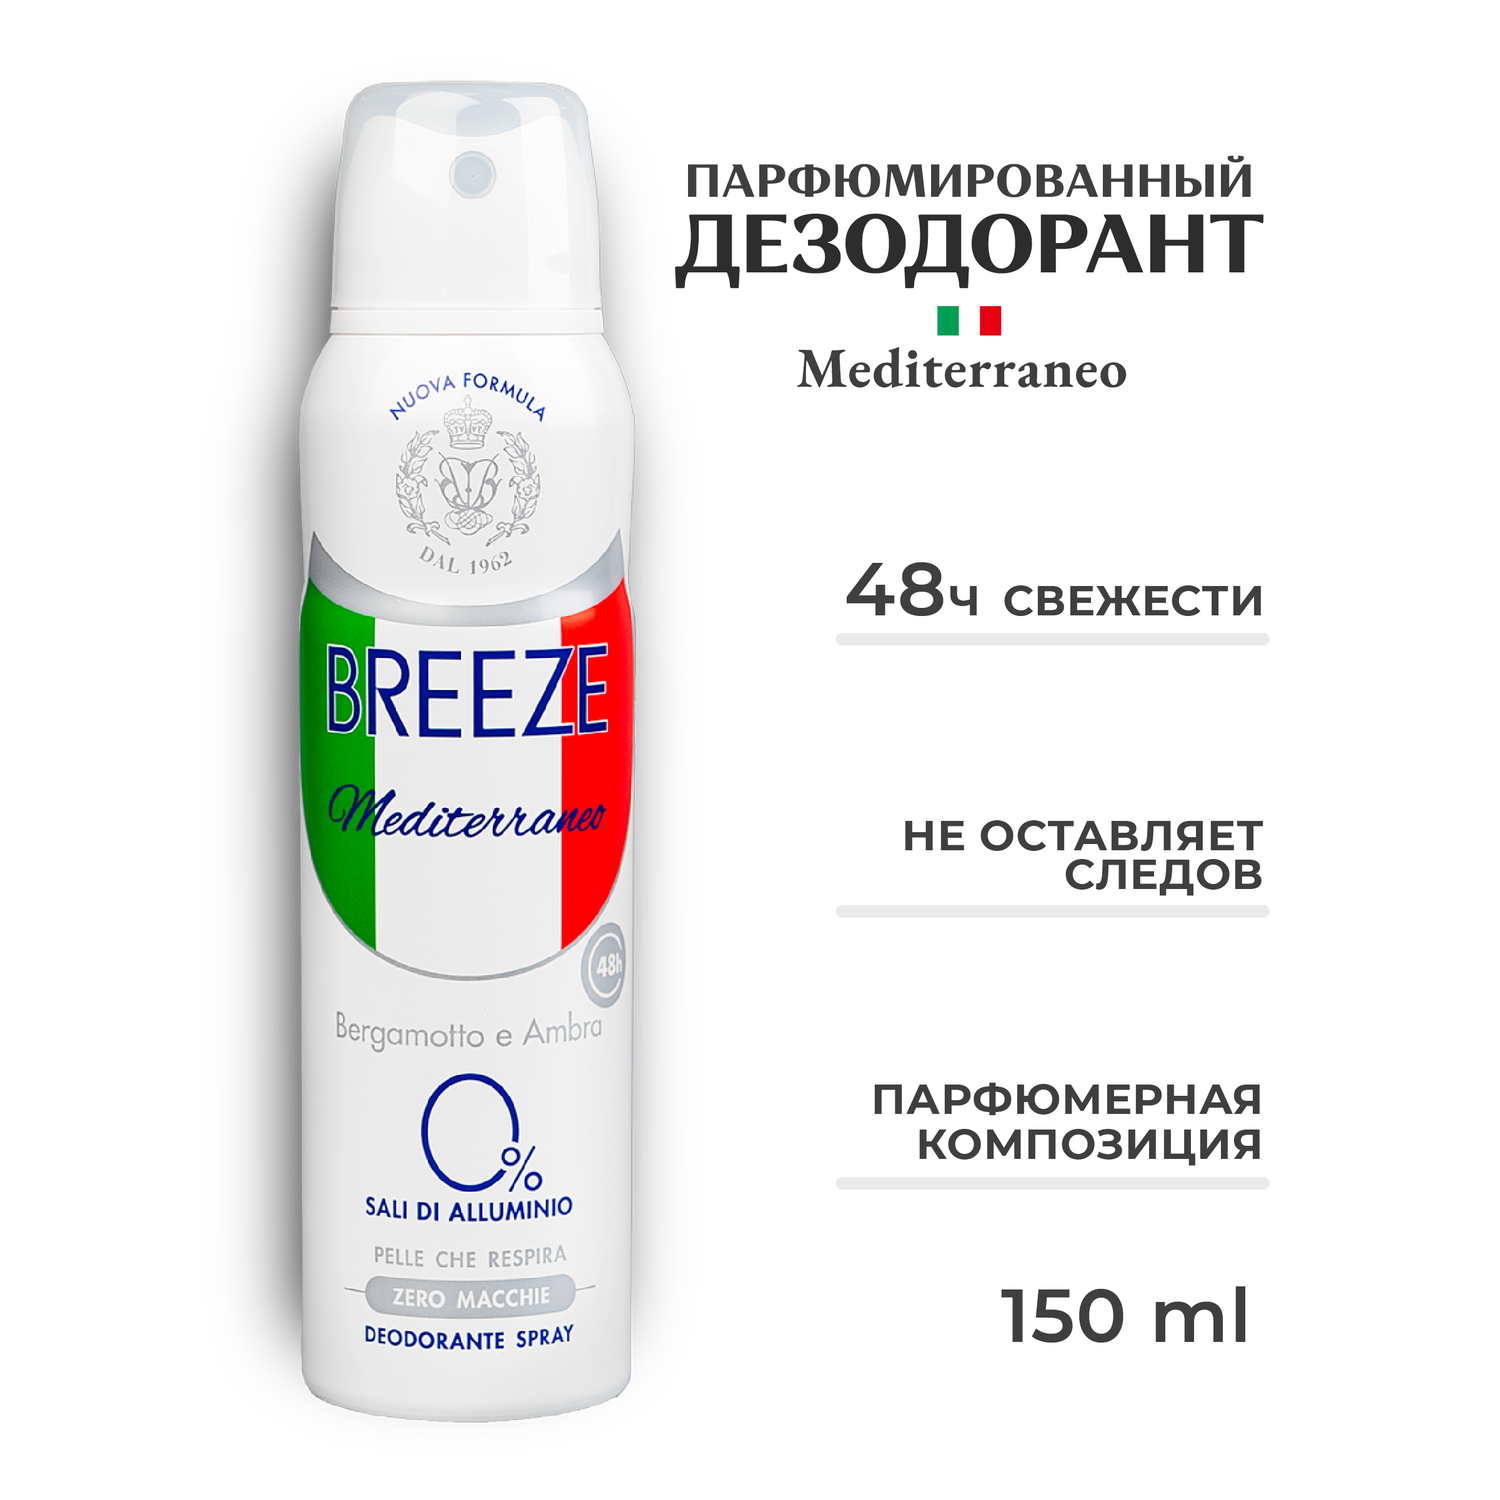 Дезодорант для тела BREEZE в аэрозольной упаковке mediterraneo 150 мл - фото 1